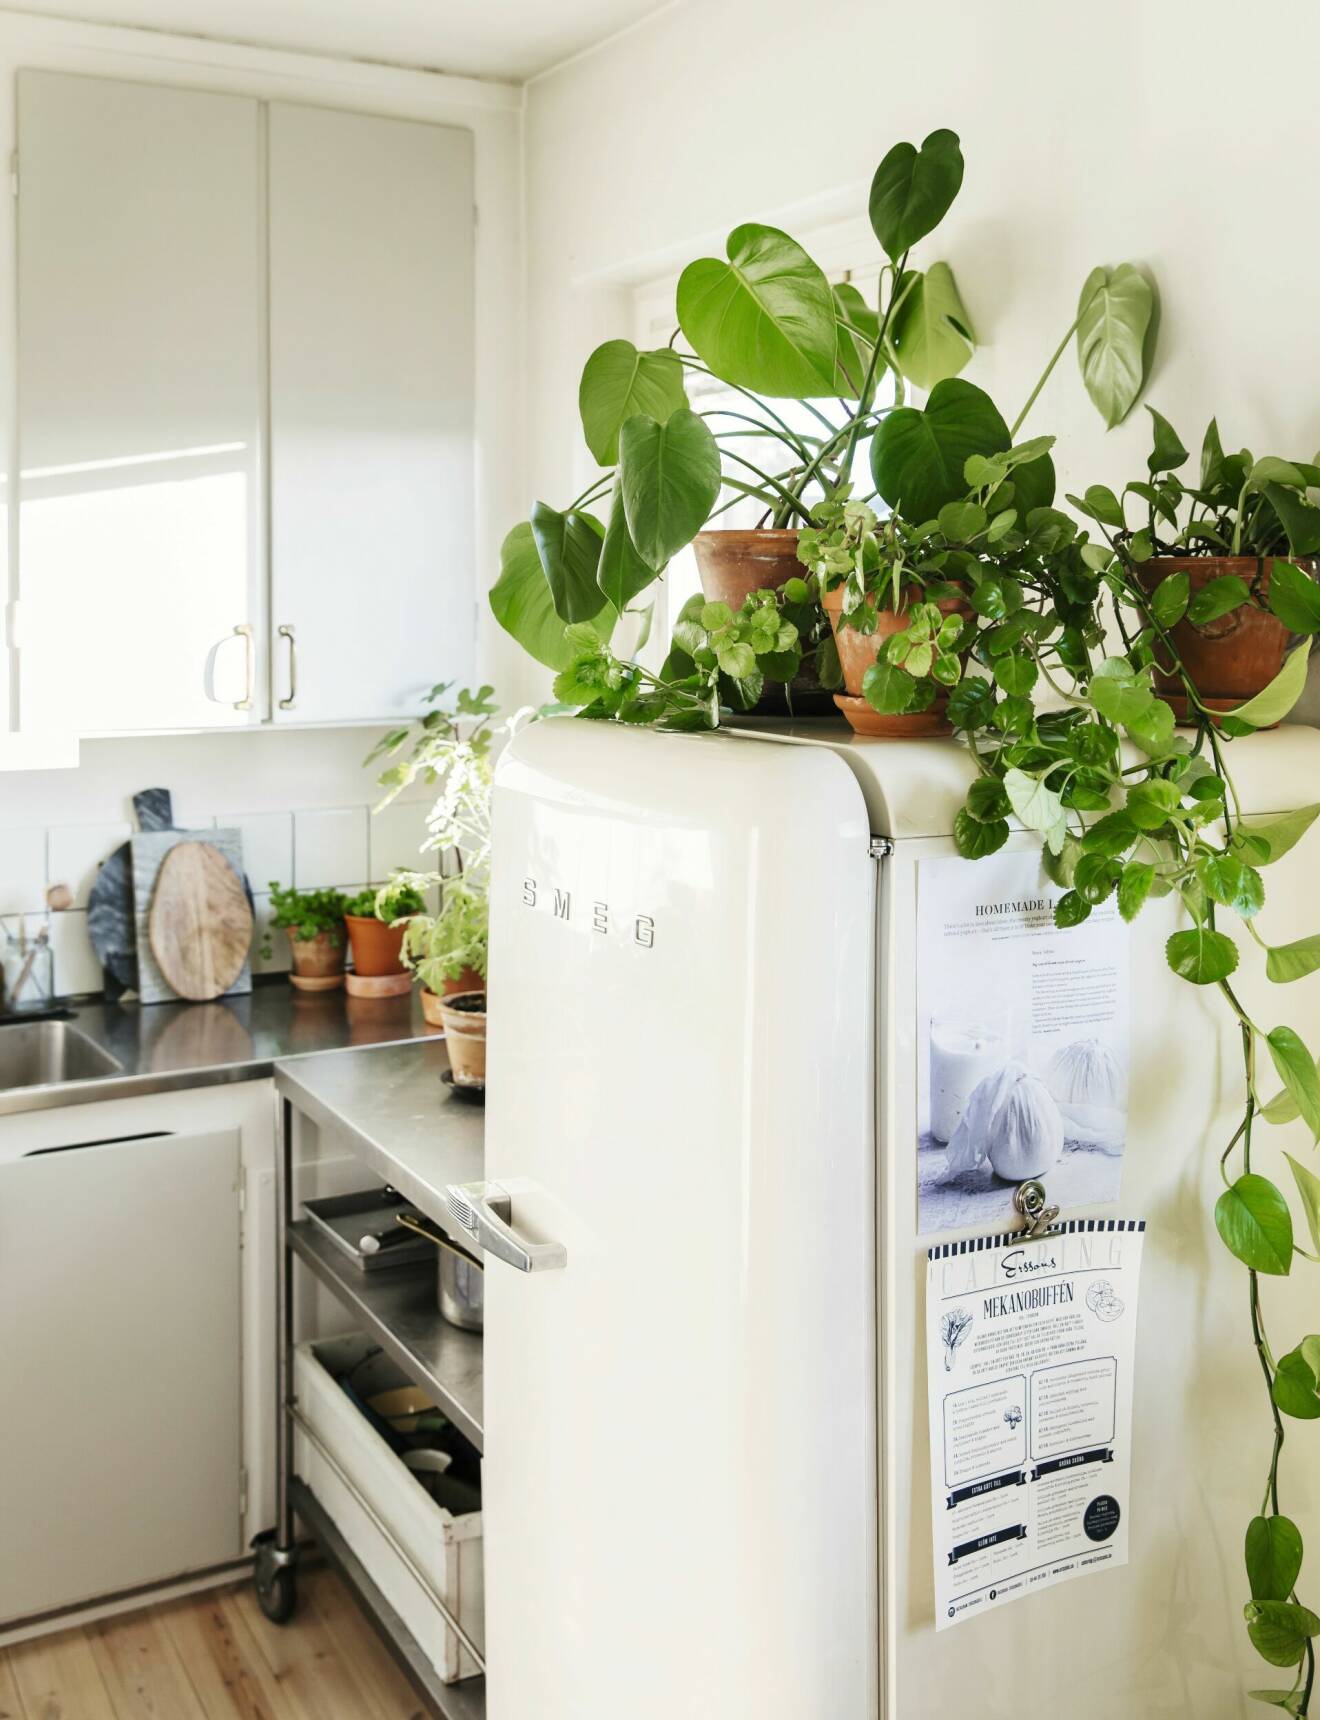 Gröna växter på kylskåpet.